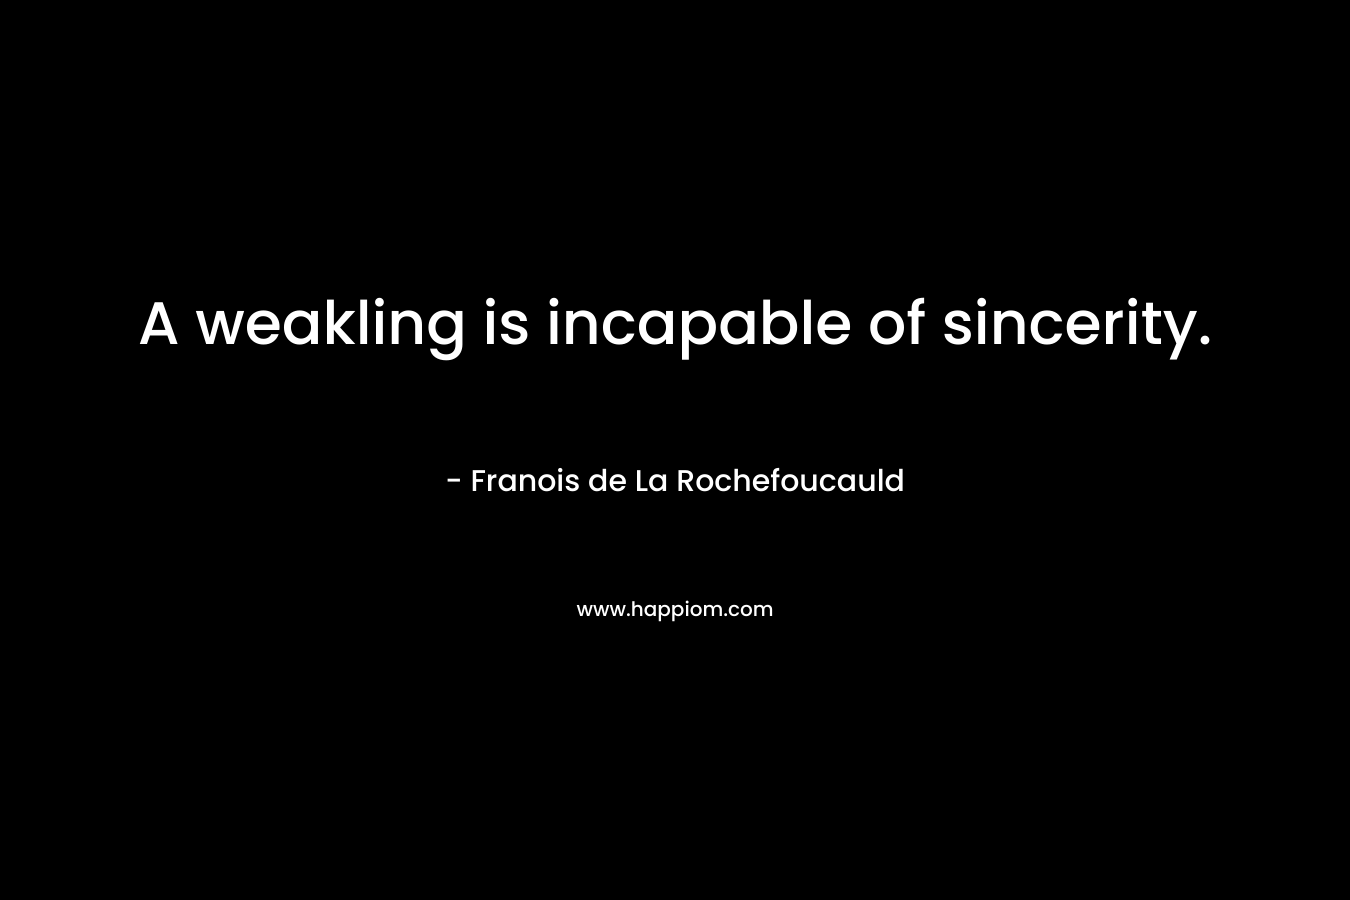 A weakling is incapable of sincerity. – Franois de La Rochefoucauld